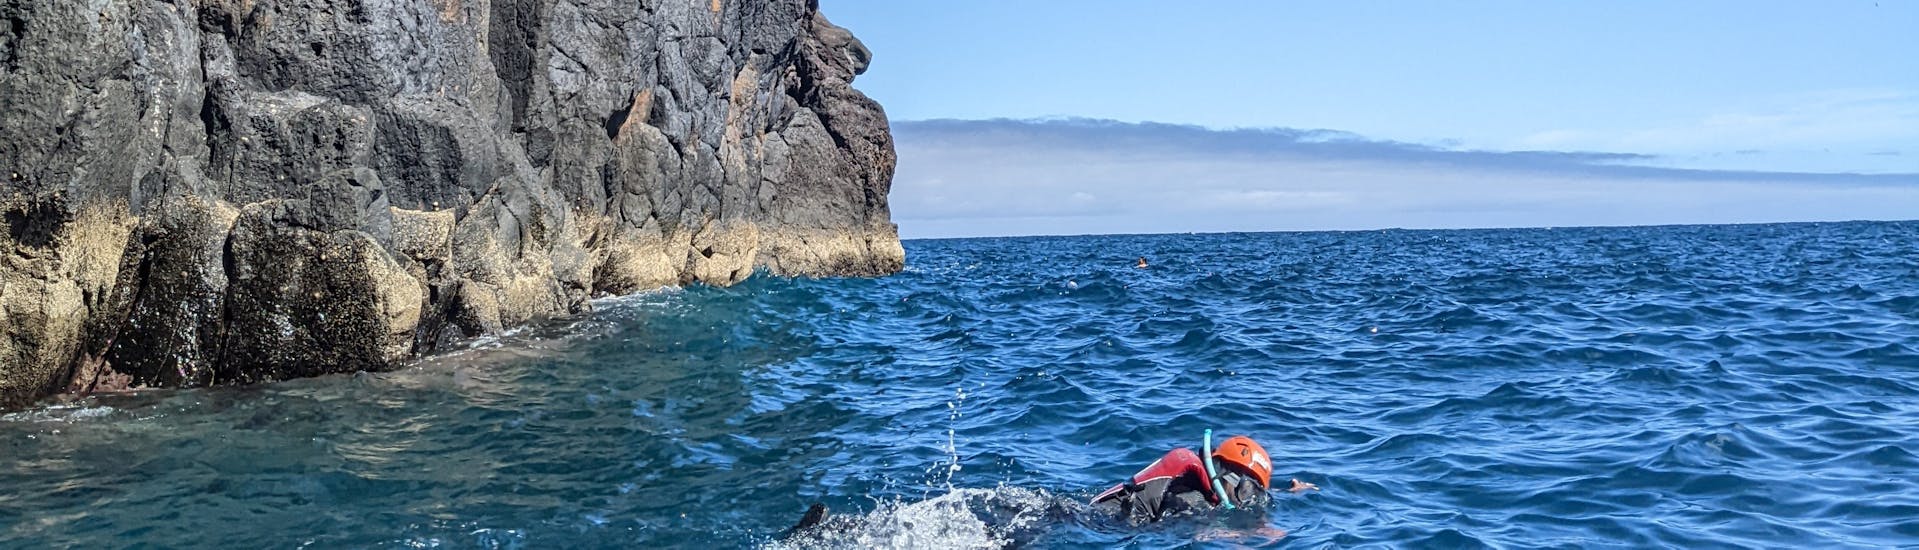 Iemand verkent de onderwaterwereld aan de kust tijdens de Coasteering Tour met snorkelen op Madeira met Lokoloko Madeira.